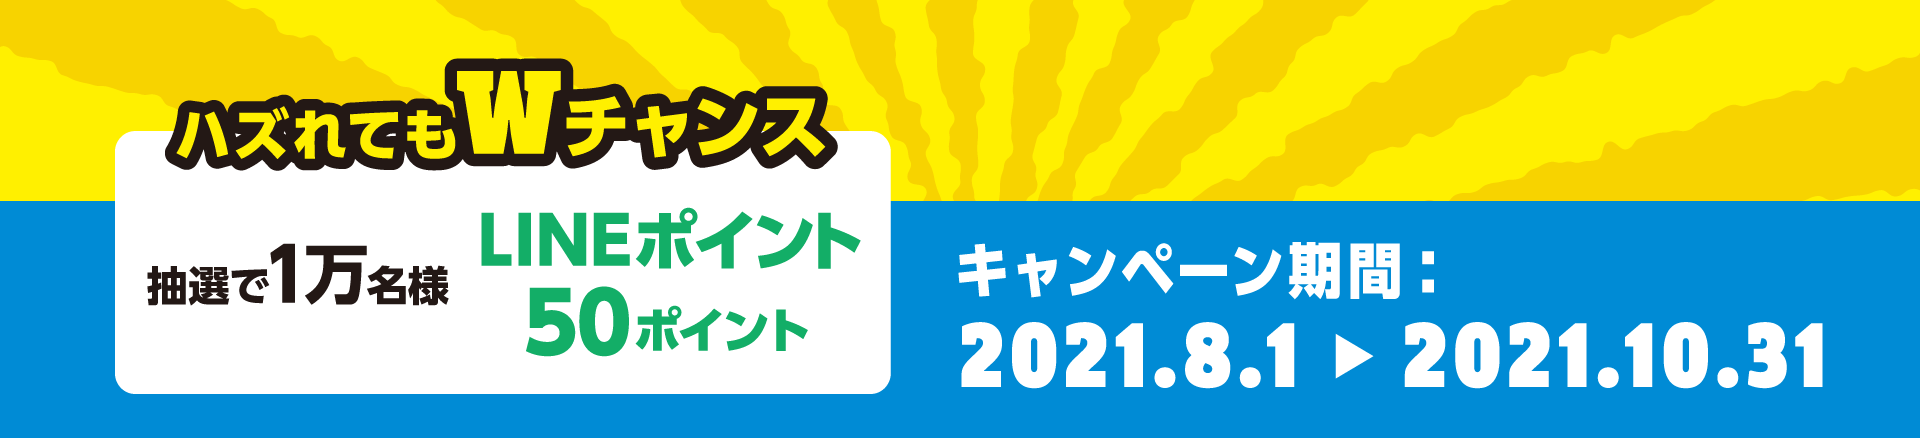 [ハズれてもWチャンス]抽選1万名様LINEポイント50ポイント キャンペーン期間：2021.8.1-2021.10.31